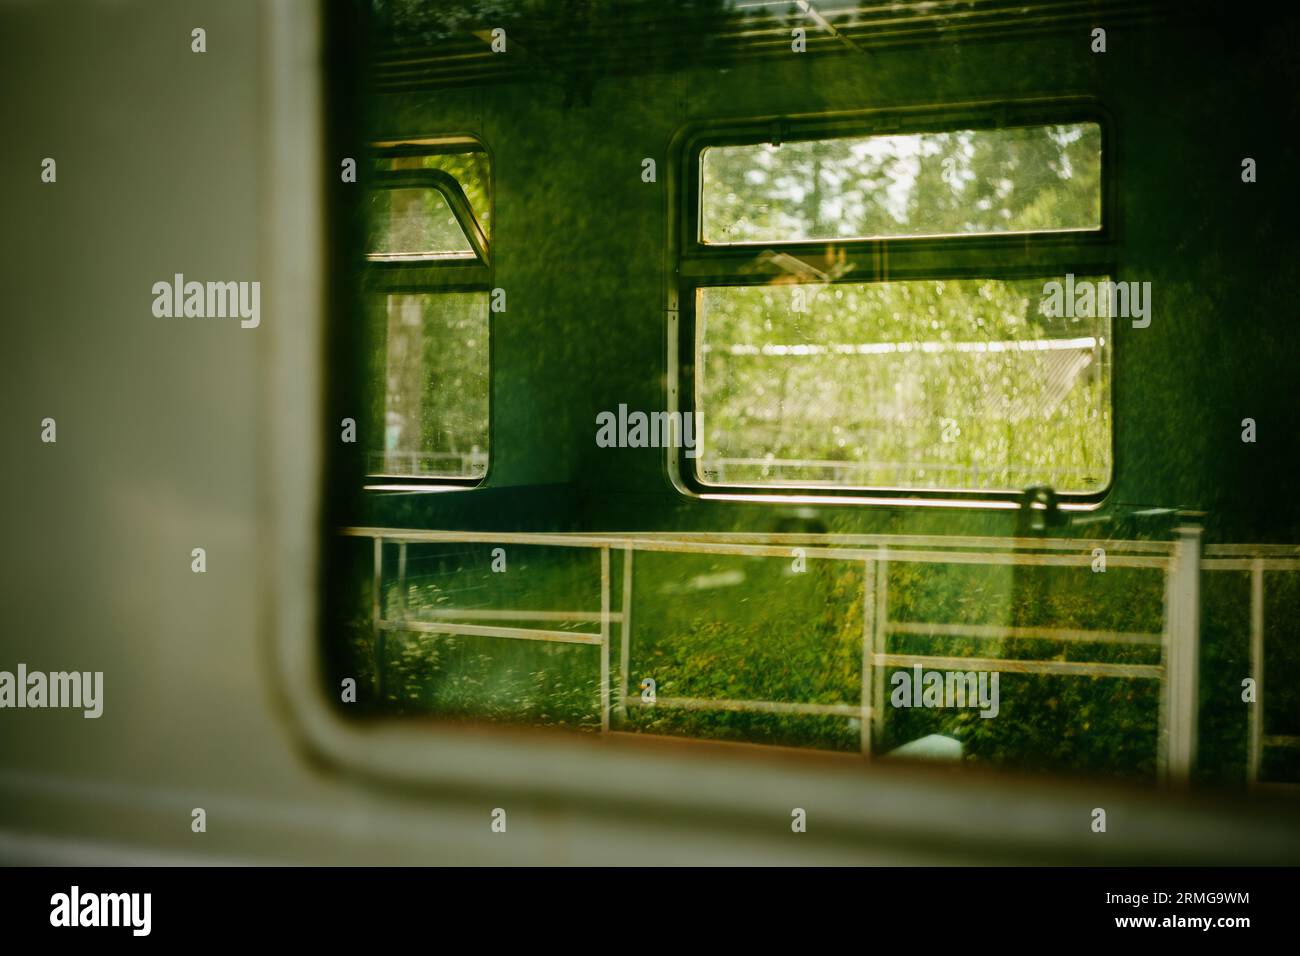 Le finestre di un vecchio treno elettrico che riflette il verde degli alberi. L'esperienza di viaggiare sui mezzi pubblici in mezzo alla natura. Trasporti Foto Stock